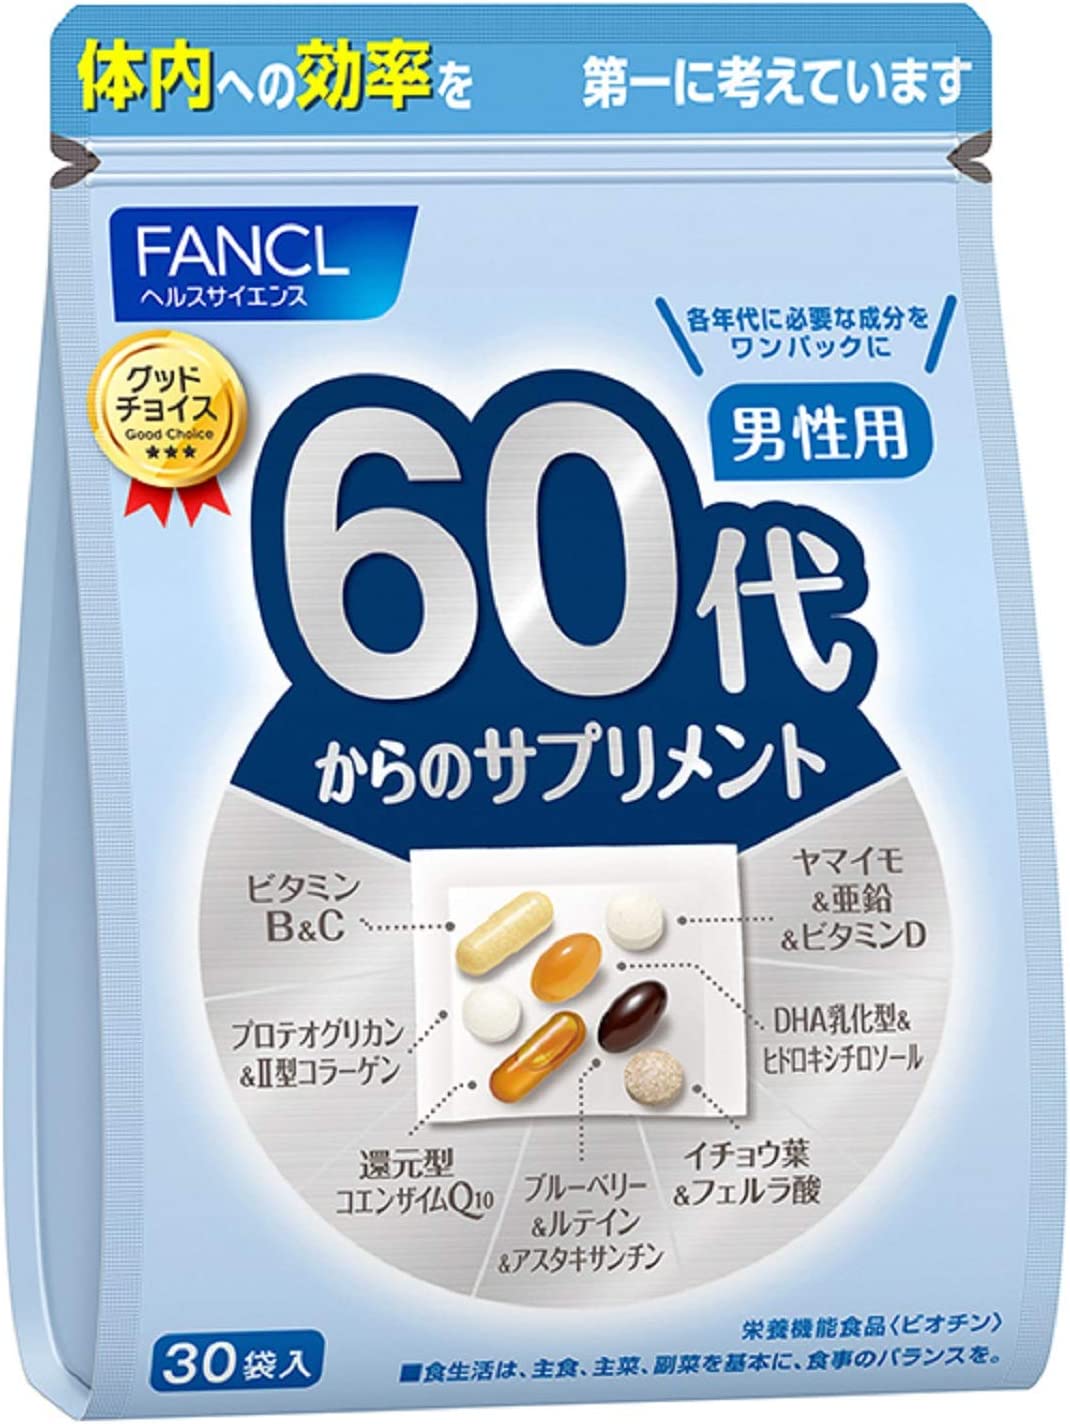 Комплекс витамин FANCL для мужчин старше 60 лет комплекс пробиотиков fancl 60 таблеток со вкусом лимонного йогурта